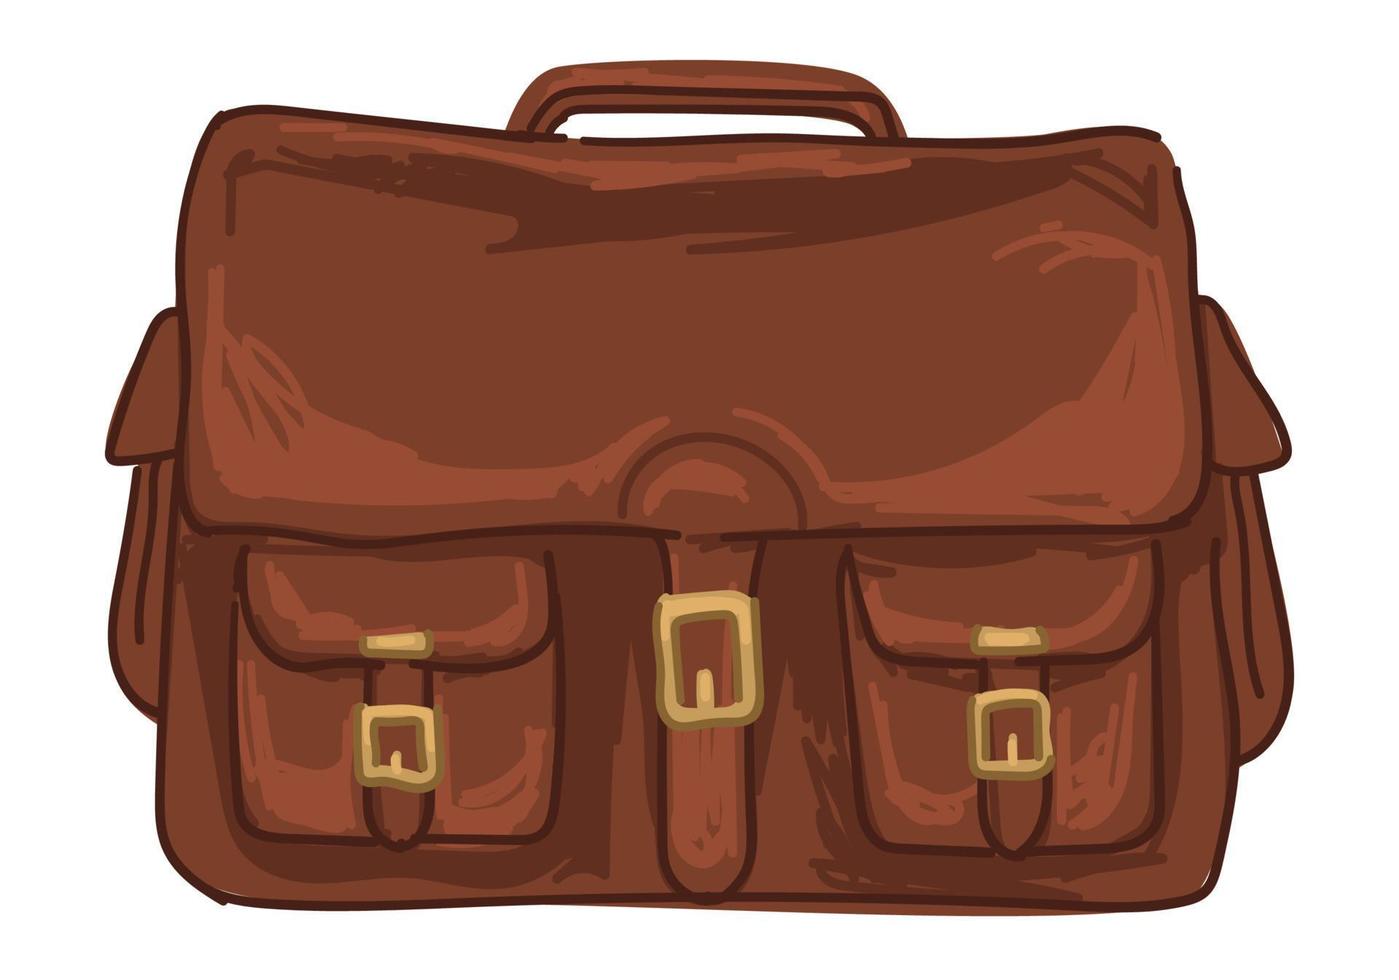 bolsa de couro ou bagagem para viajar, estilo safári vetor